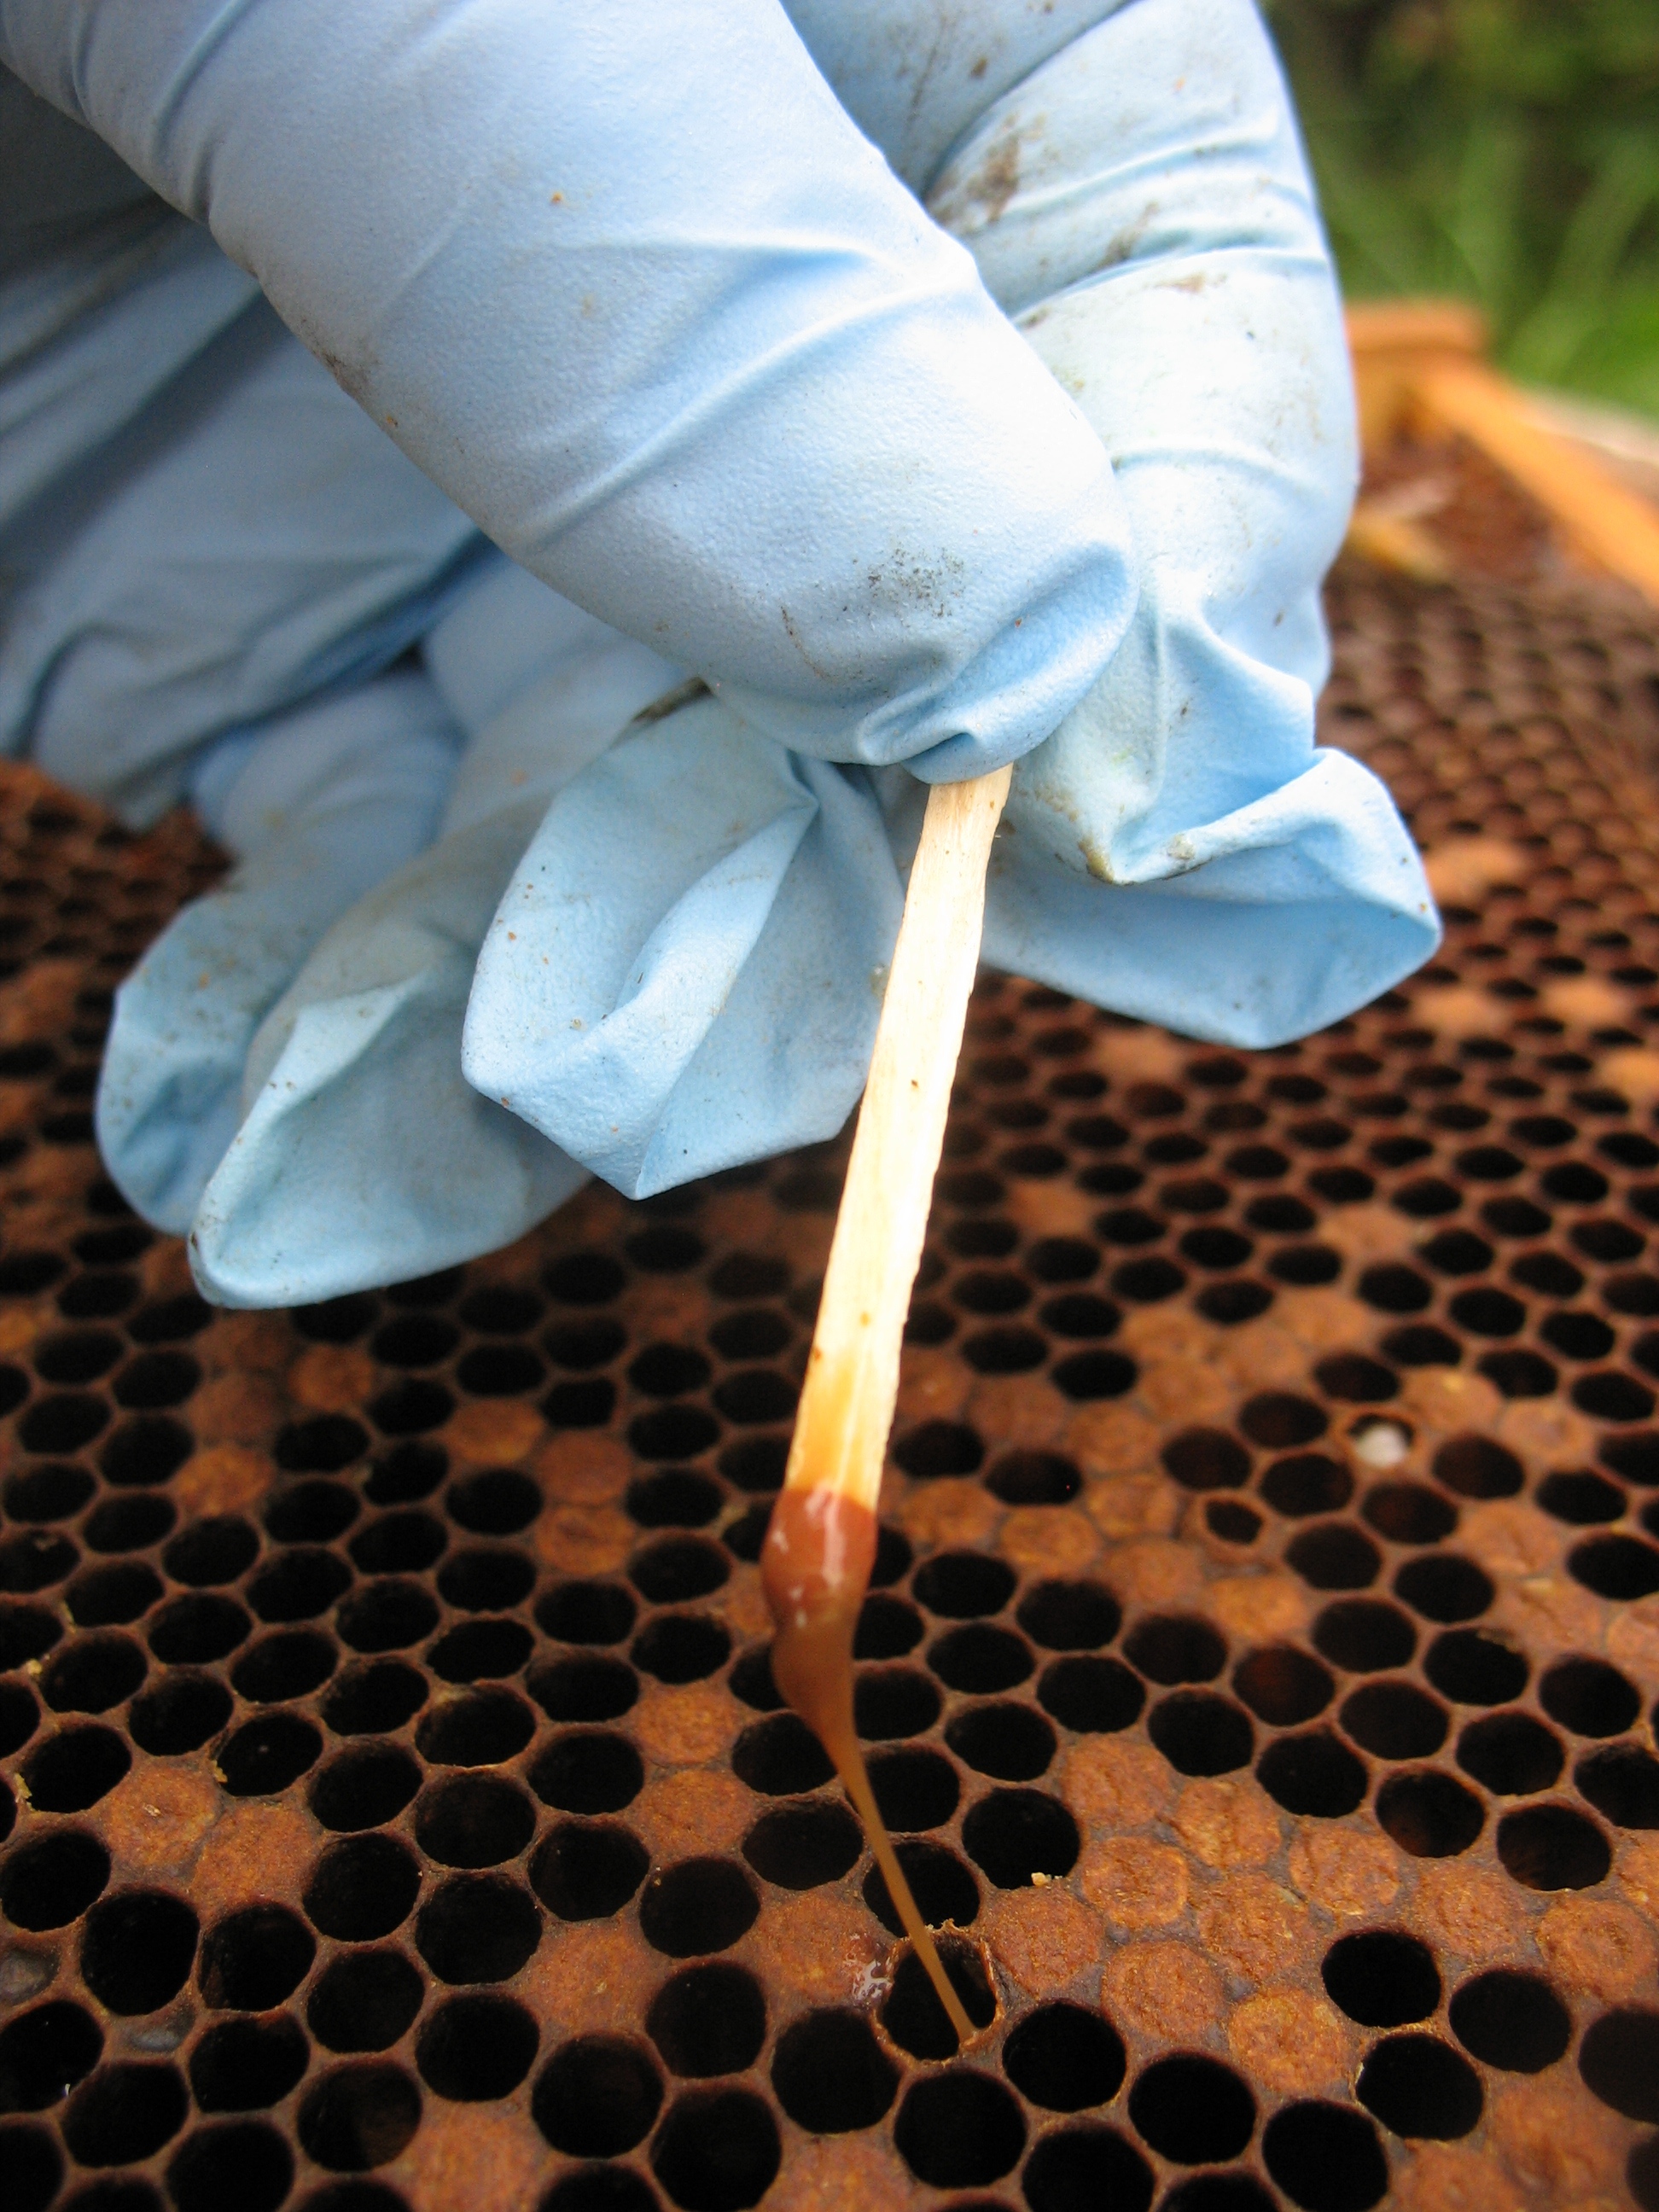 Essai diagnostique pour évaluer la viscosité des larves à l’aide d’une allumette